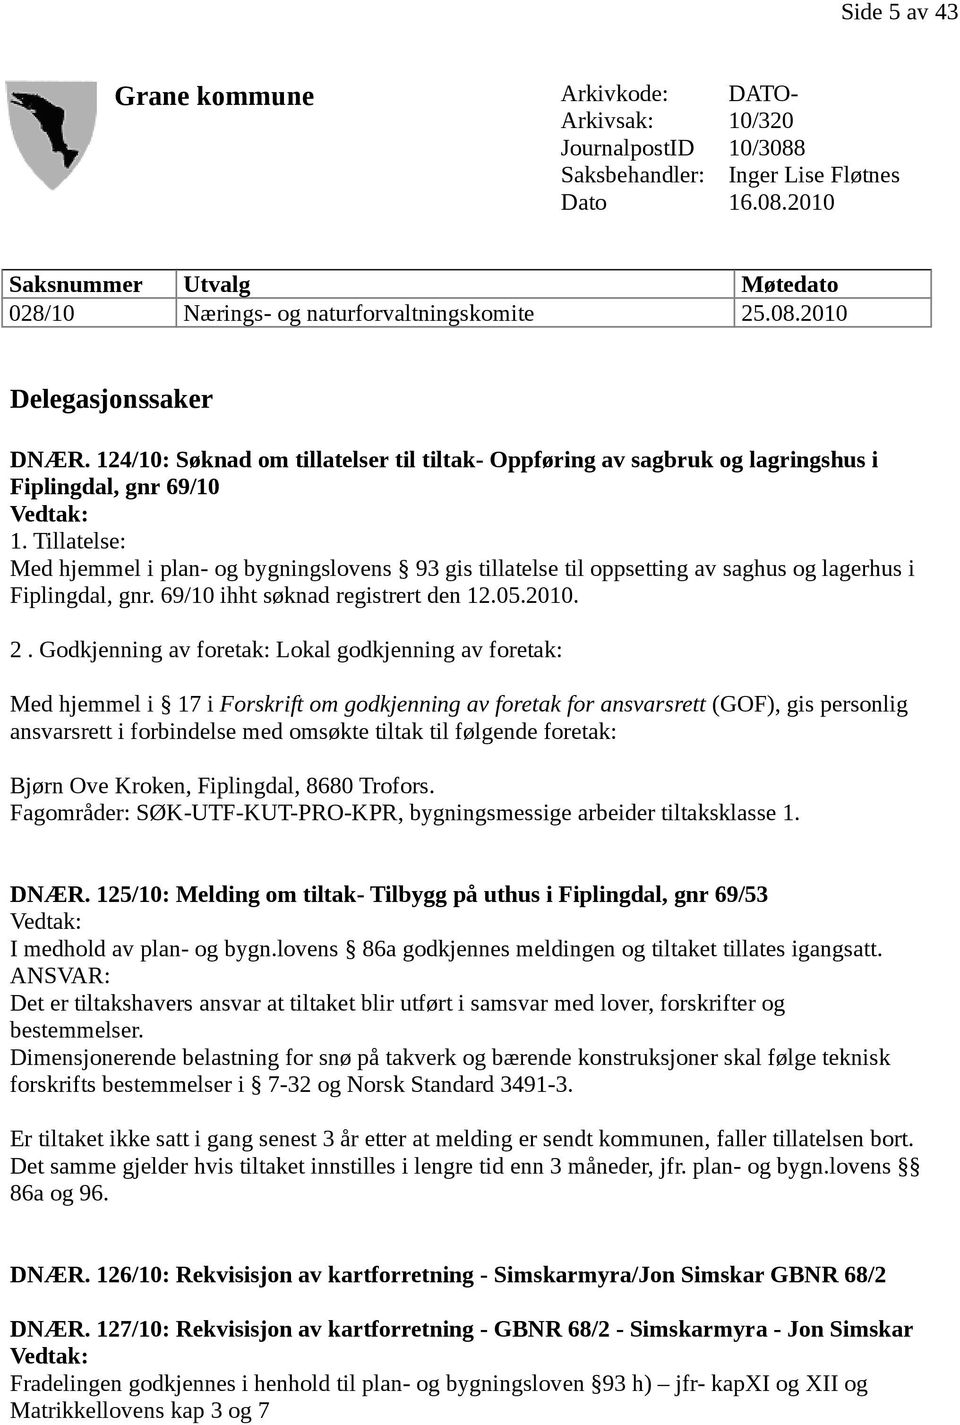 Tillatelse: Med hjemmel i plan- og bygningslovens 93 gis tillatelse til oppsetting av saghus og lagerhus i Fiplingdal, gnr. 69/10 ihht søknad registrert den 12.05.2010. 2.